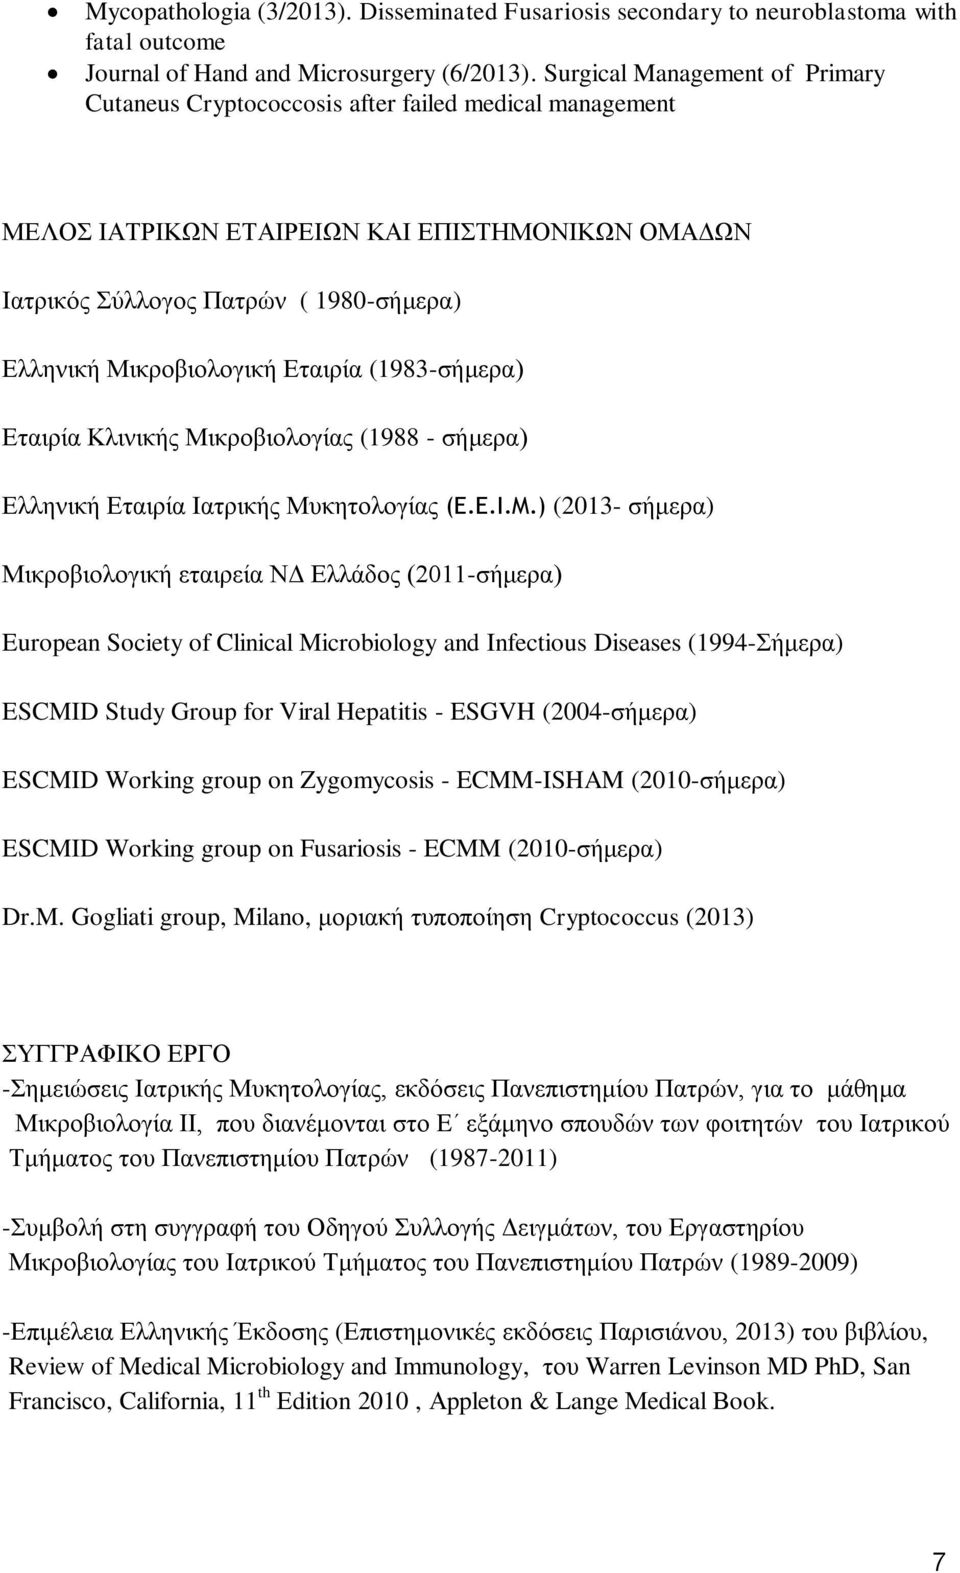 Μικροβιολογική Εταιρία (1983-σήμερα) Εταιρία Κλινικής Μικροβιολογίας (1988 - σήμερα) Ελληνική Εταιρία Ιατρικής Μυκητολογίας (E.E.I.M.